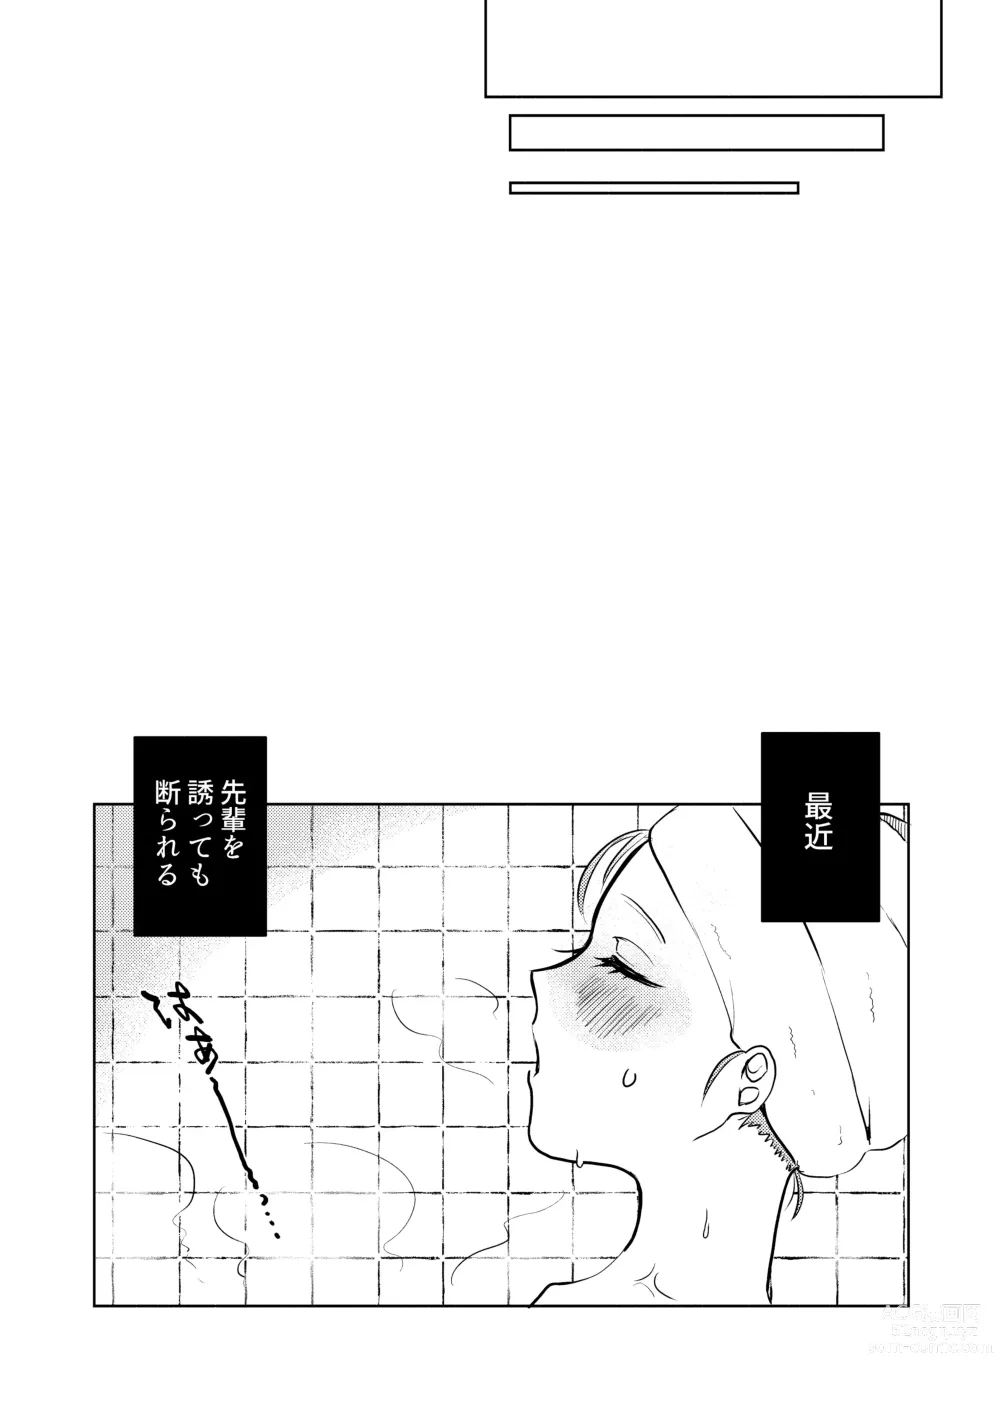 Page 24 of doujinshi Semete Saigo no Keshiki ni Naritai.